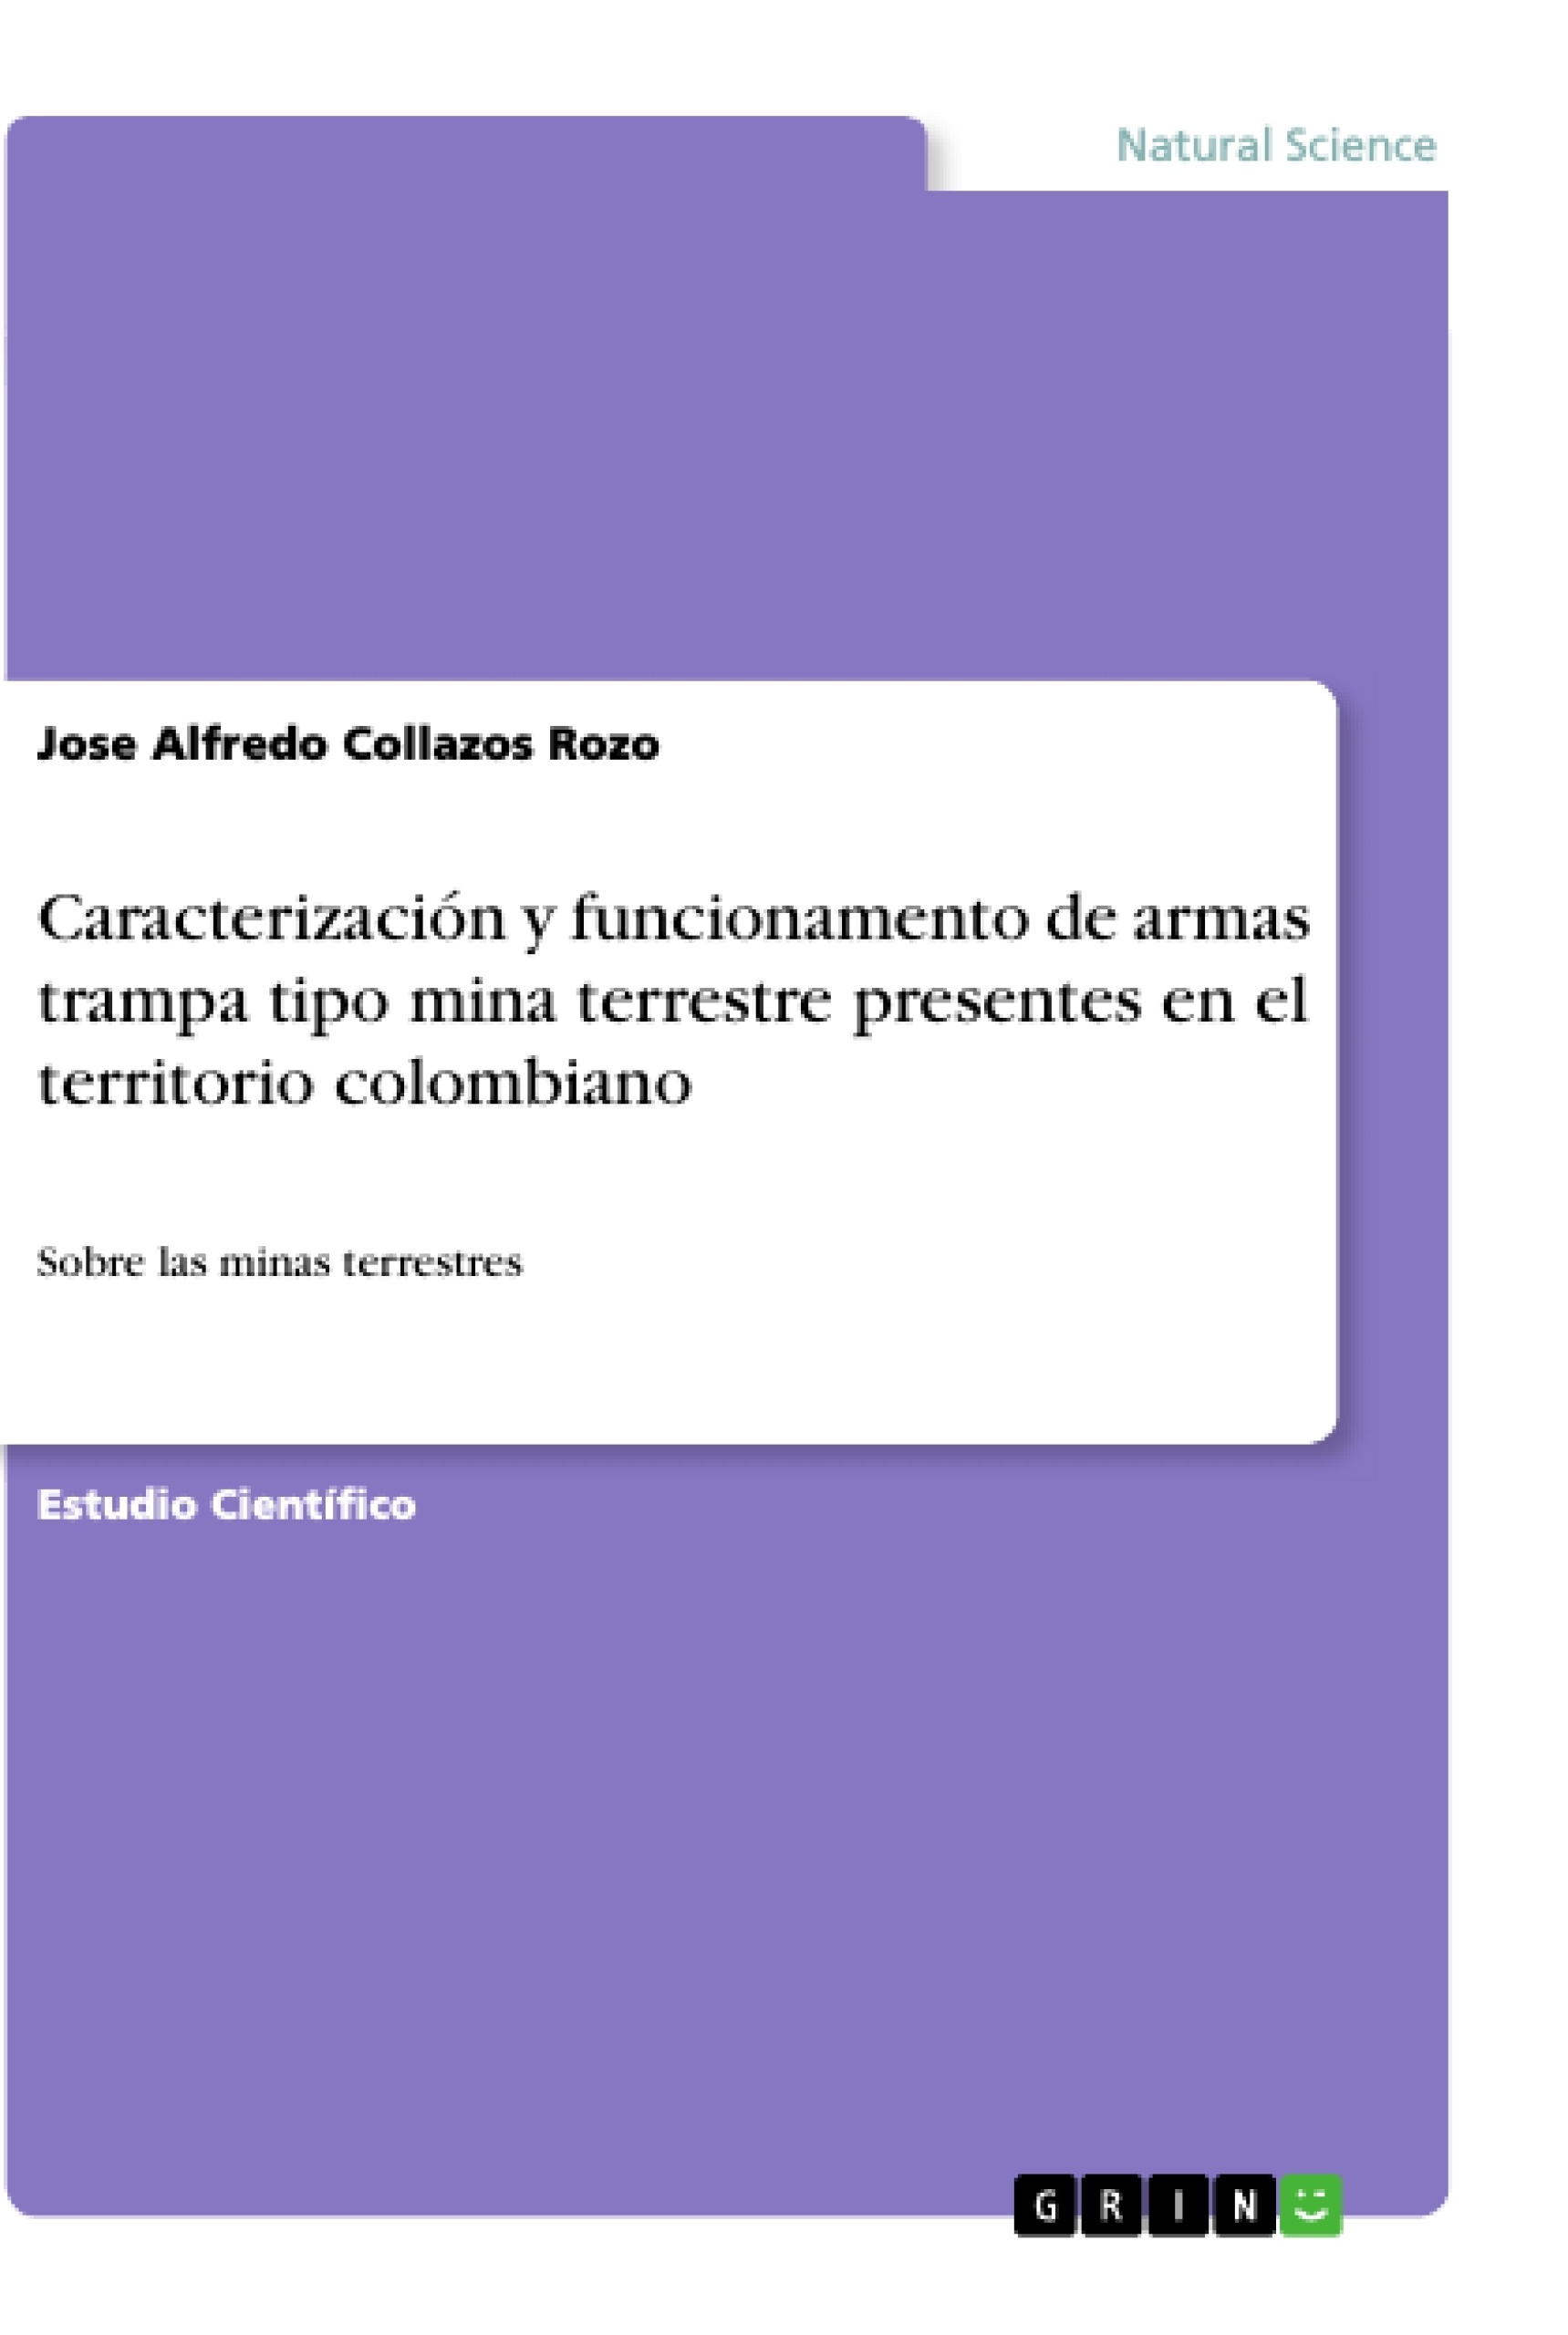 Título: Caracterización y funcionamento de armas trampa tipo mina terrestre presentes en el territorio colombiano